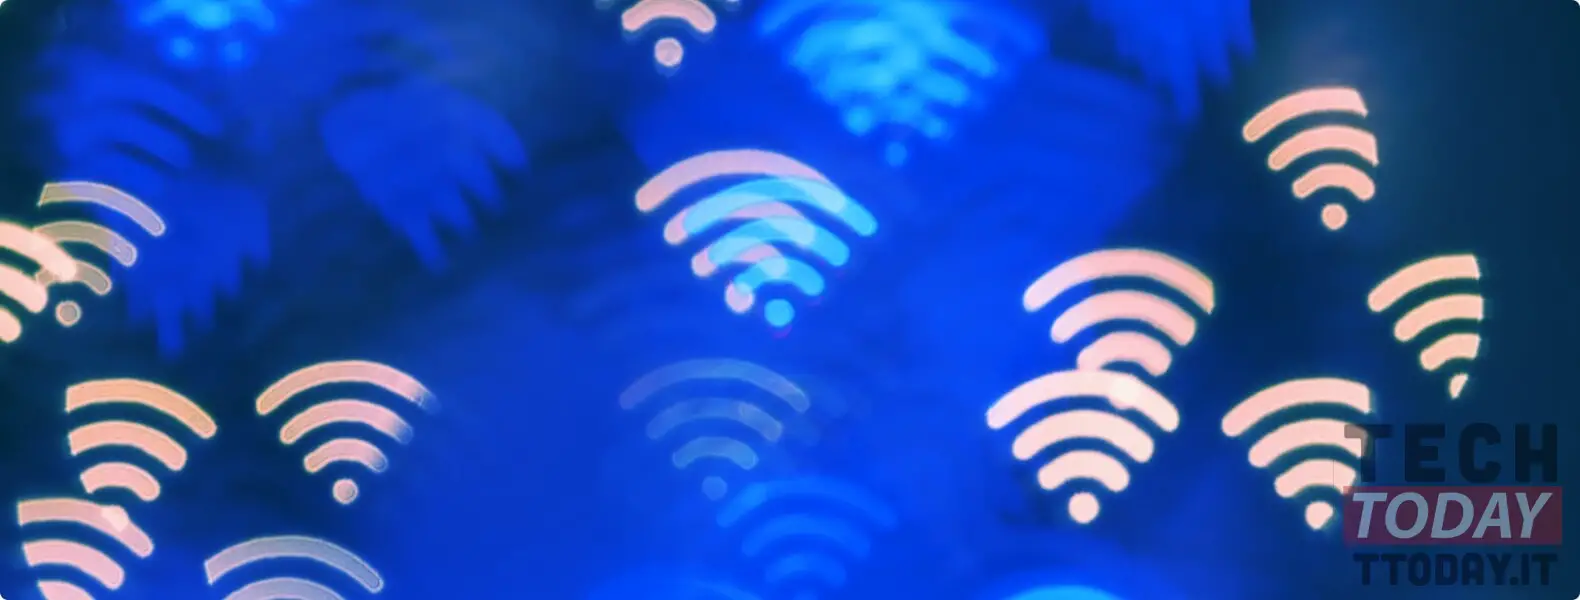 wifi più potente e senza controindicazioni